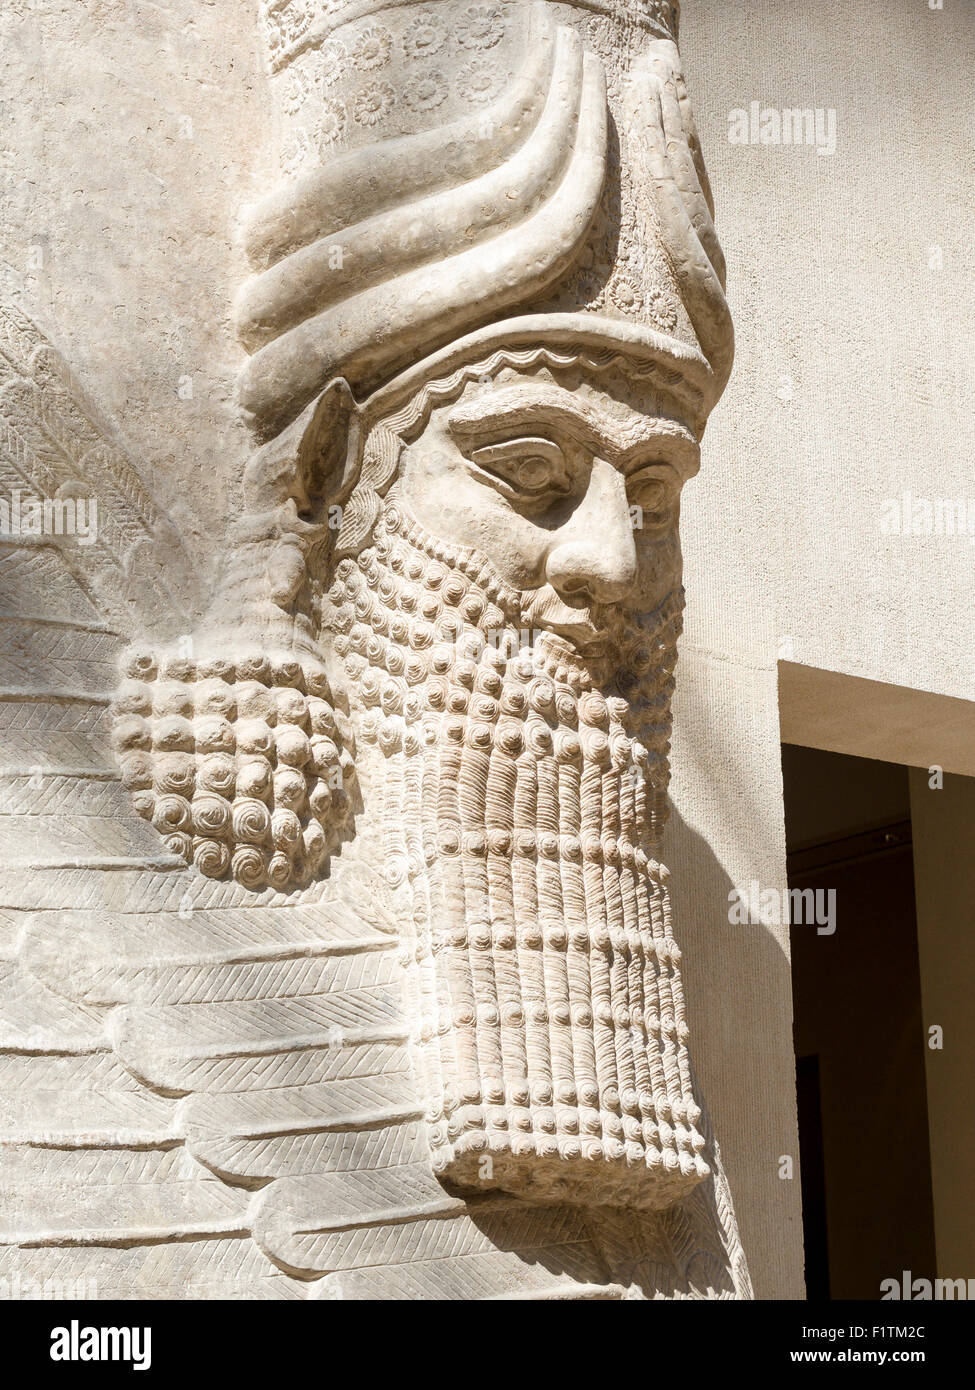 Uomo alato con testa di Bull: Testa e barba dettaglio. Originariamente parte di Sargon II capitale della Dur Sharrukin, ora Khorsabad. Dal Foto Stock